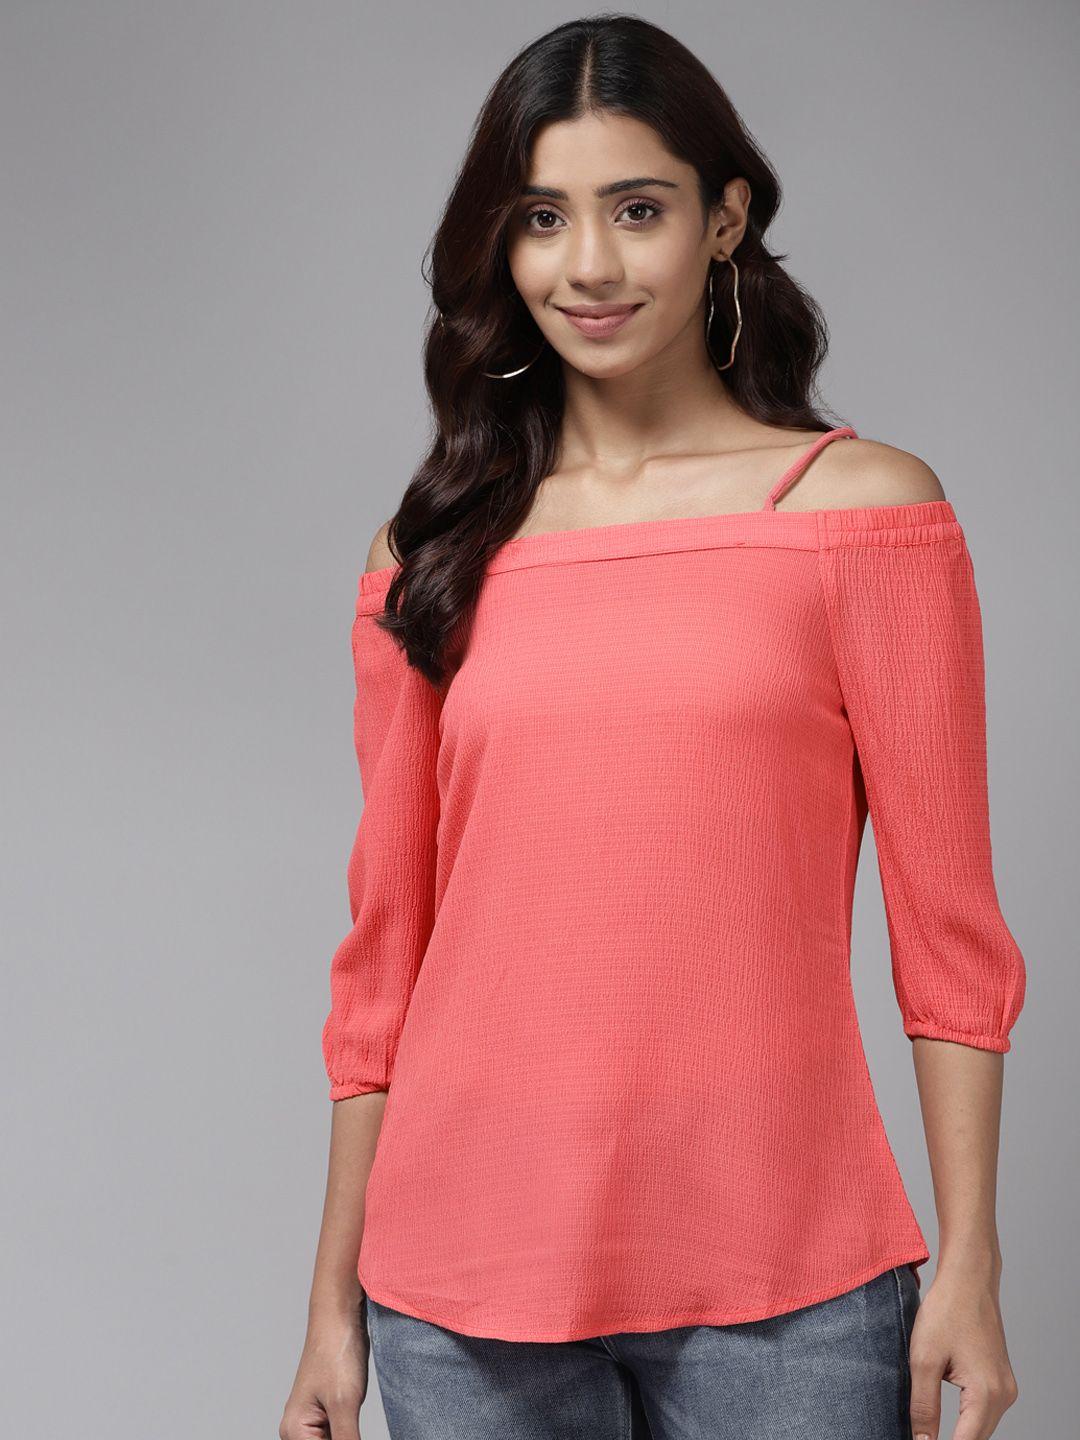 aarika pink cold shoulder solid top